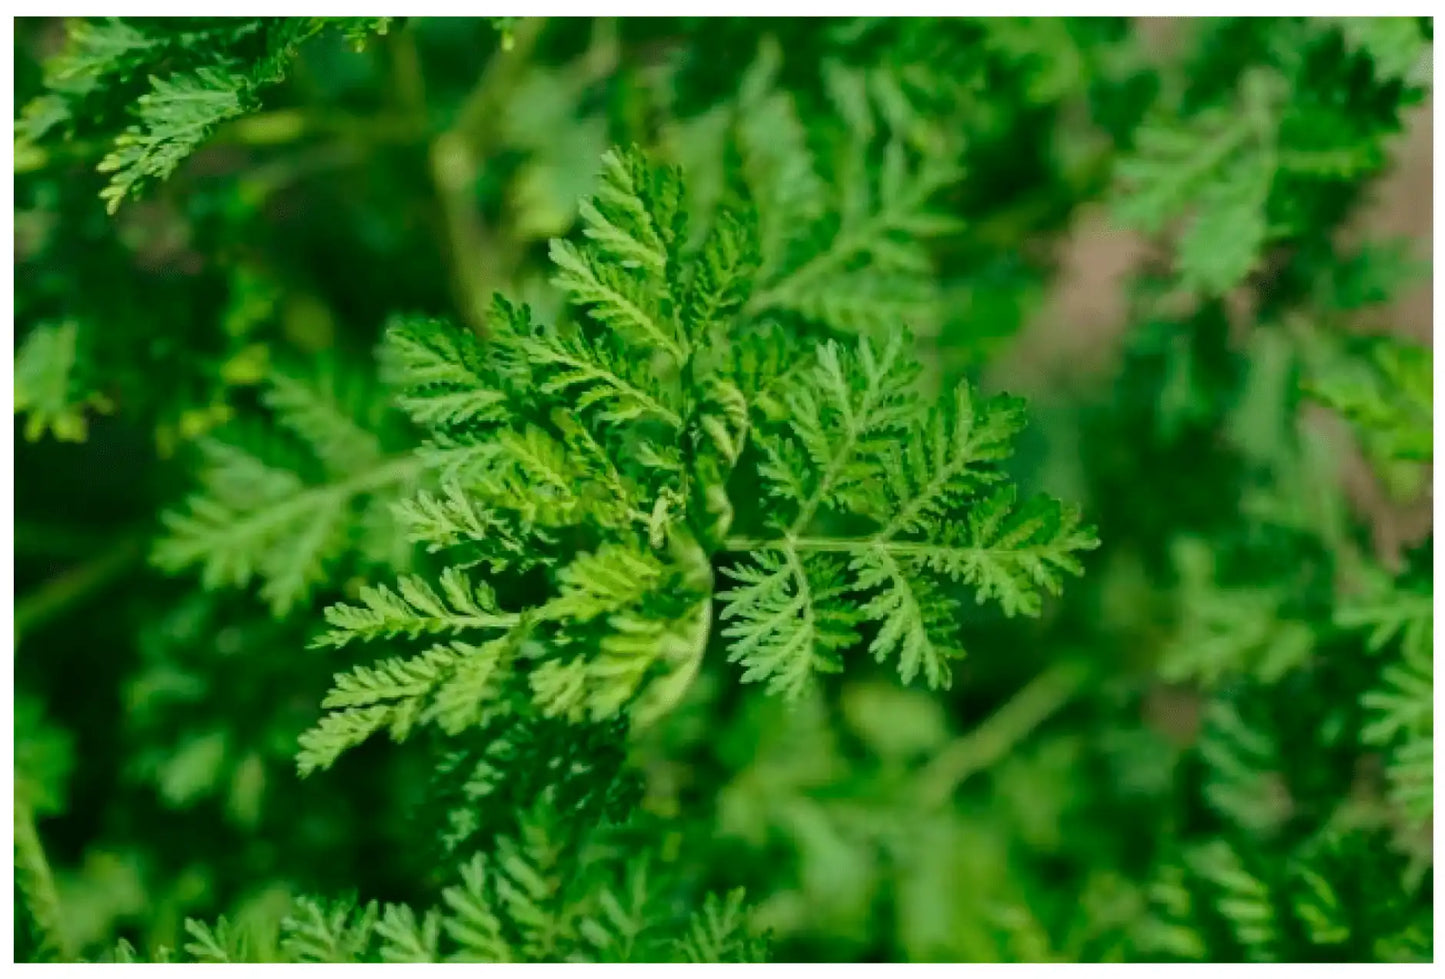 Plant vert d'Artemisia annua, plante herbacée aux petites feuilles découpées et fleurs jaunes en capitules, source naturelle d'artémisinine utilisée contre le paludisme."